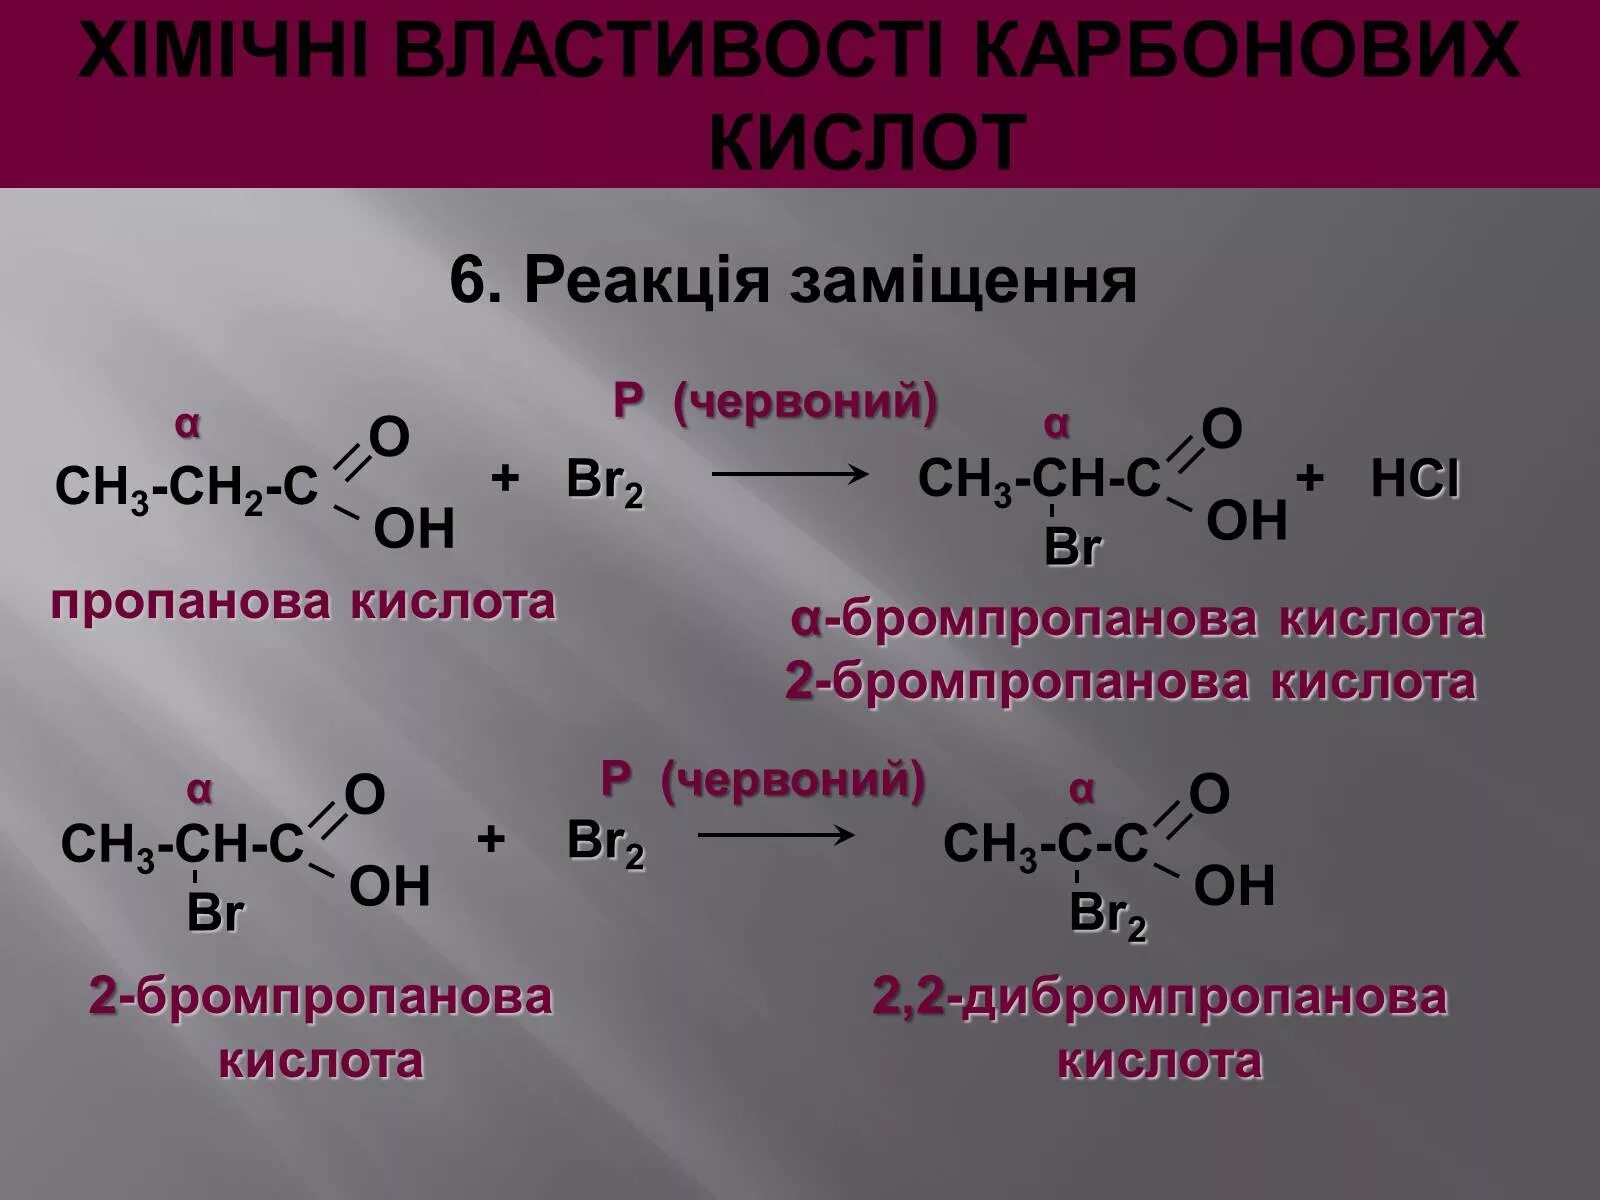 Бромпропановая кислота. Циклогексадикарбоновая кислота. 2 Бромпропановая кислота. Бутаналь с циановодородной кислотой.